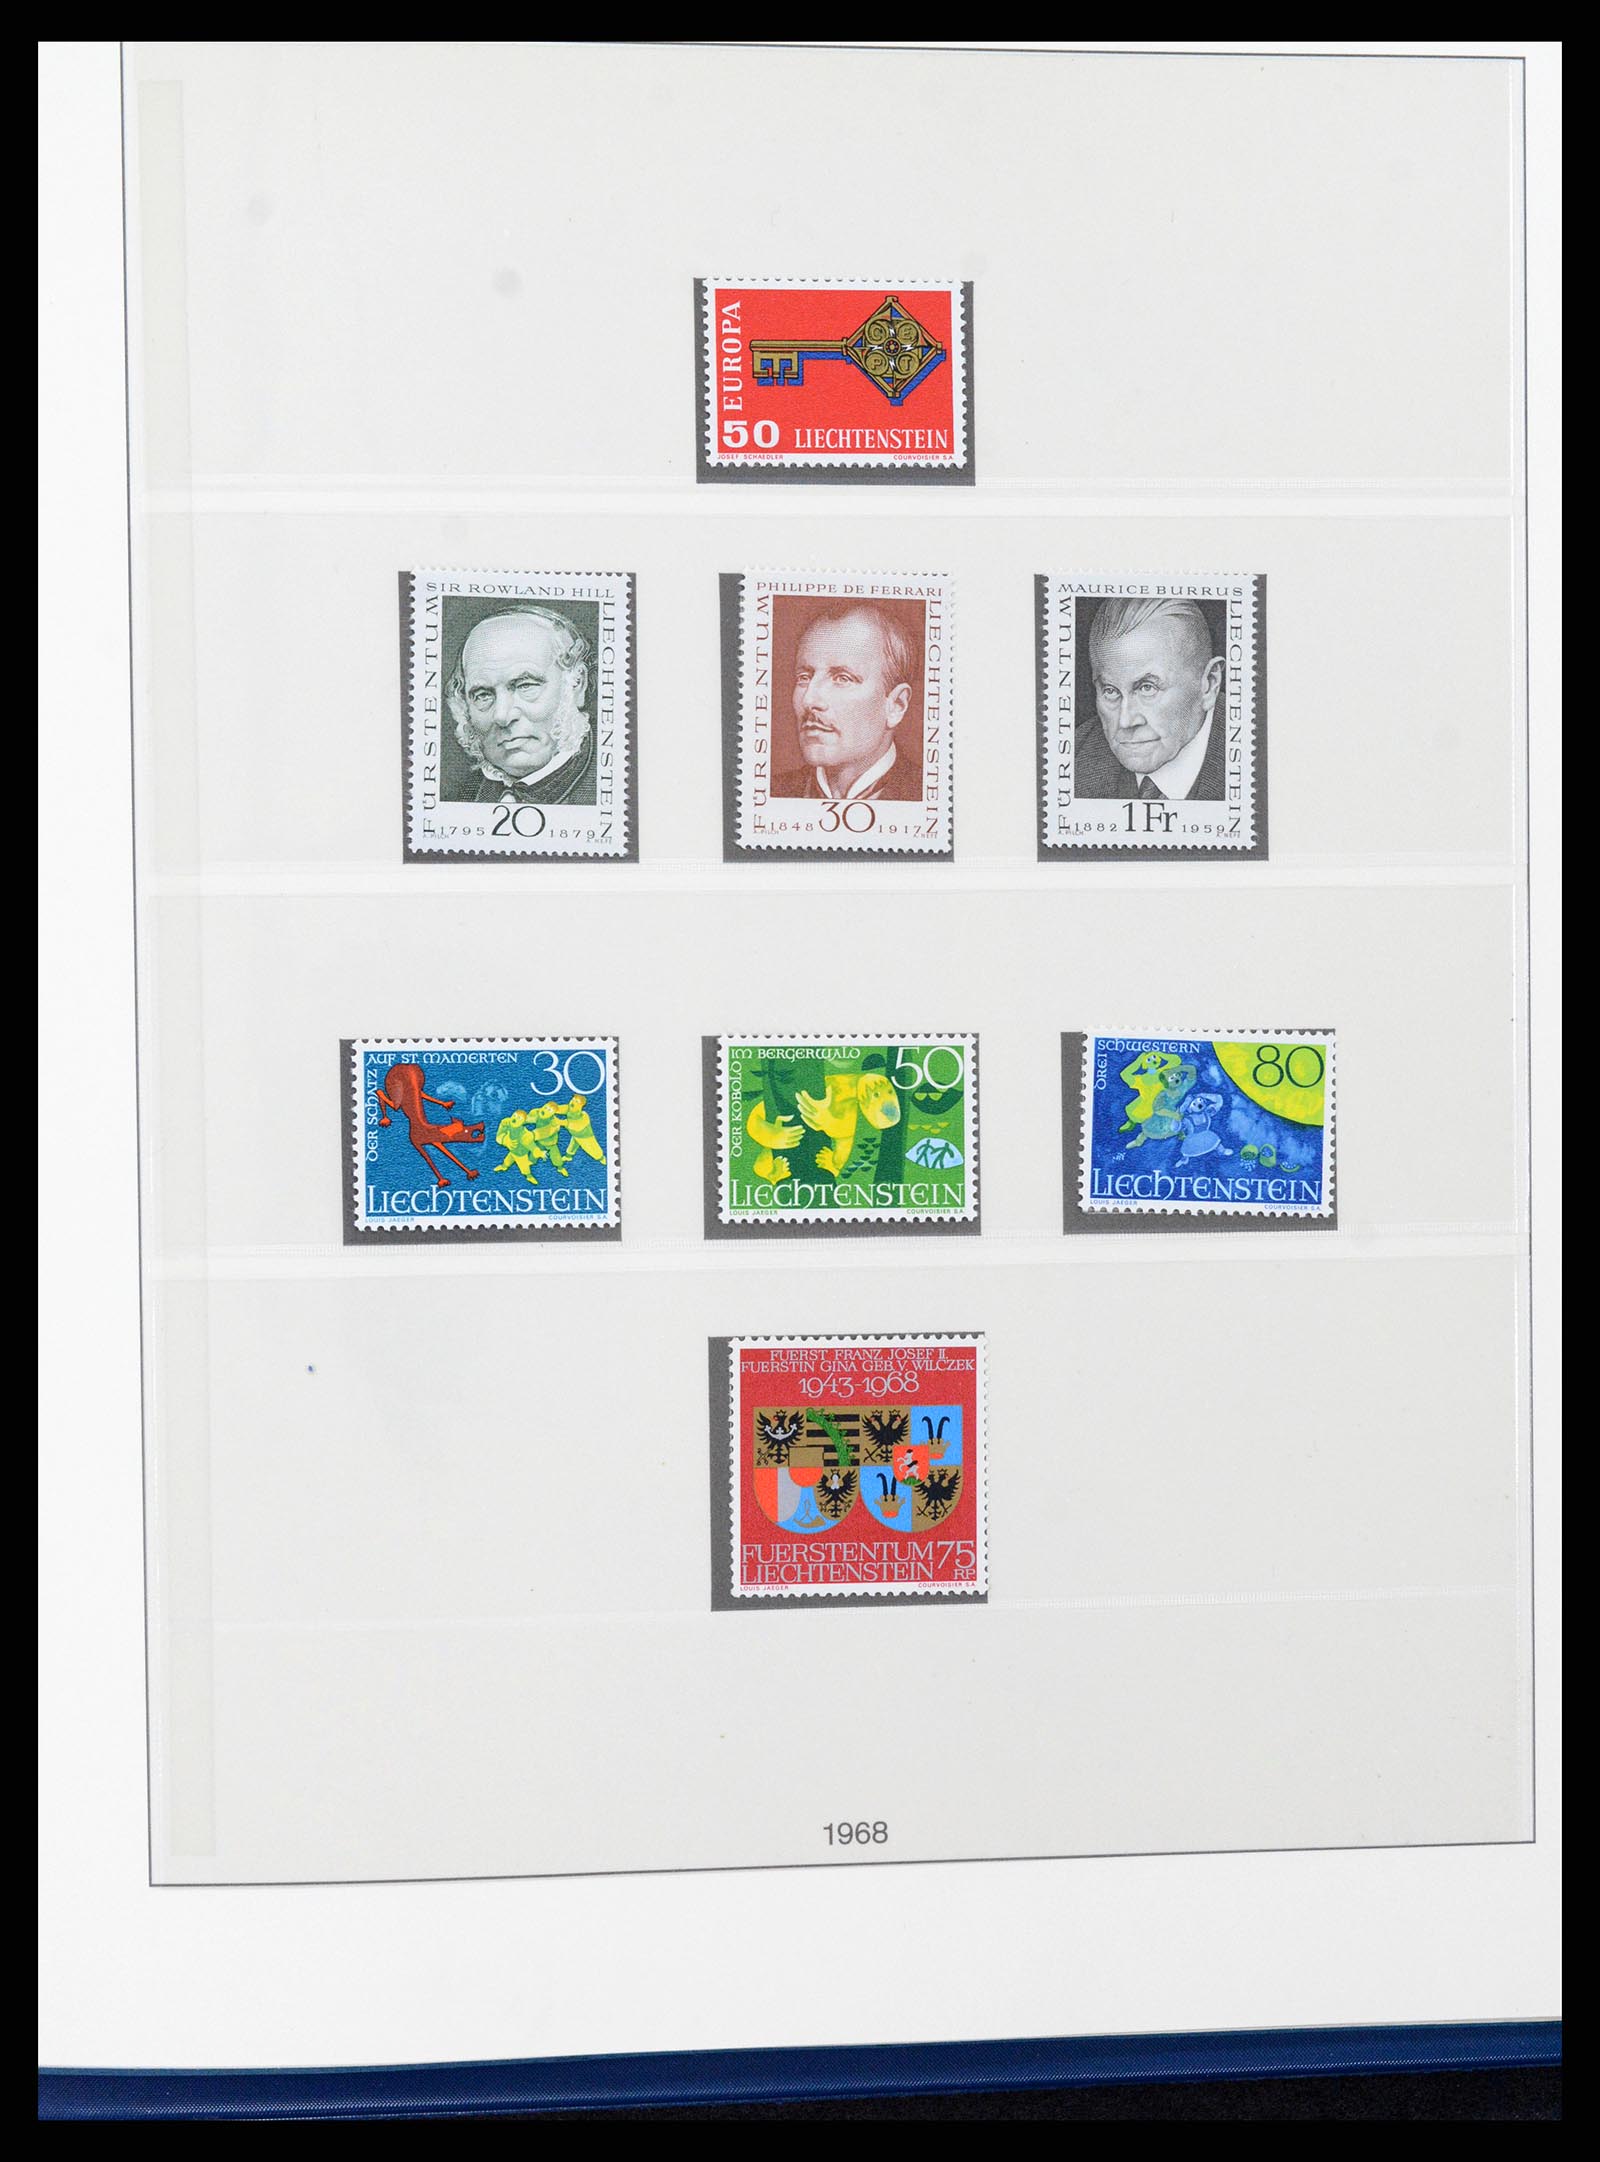 37295 048 - Stamp collection 37295 Liechtenstein 1912-2009.